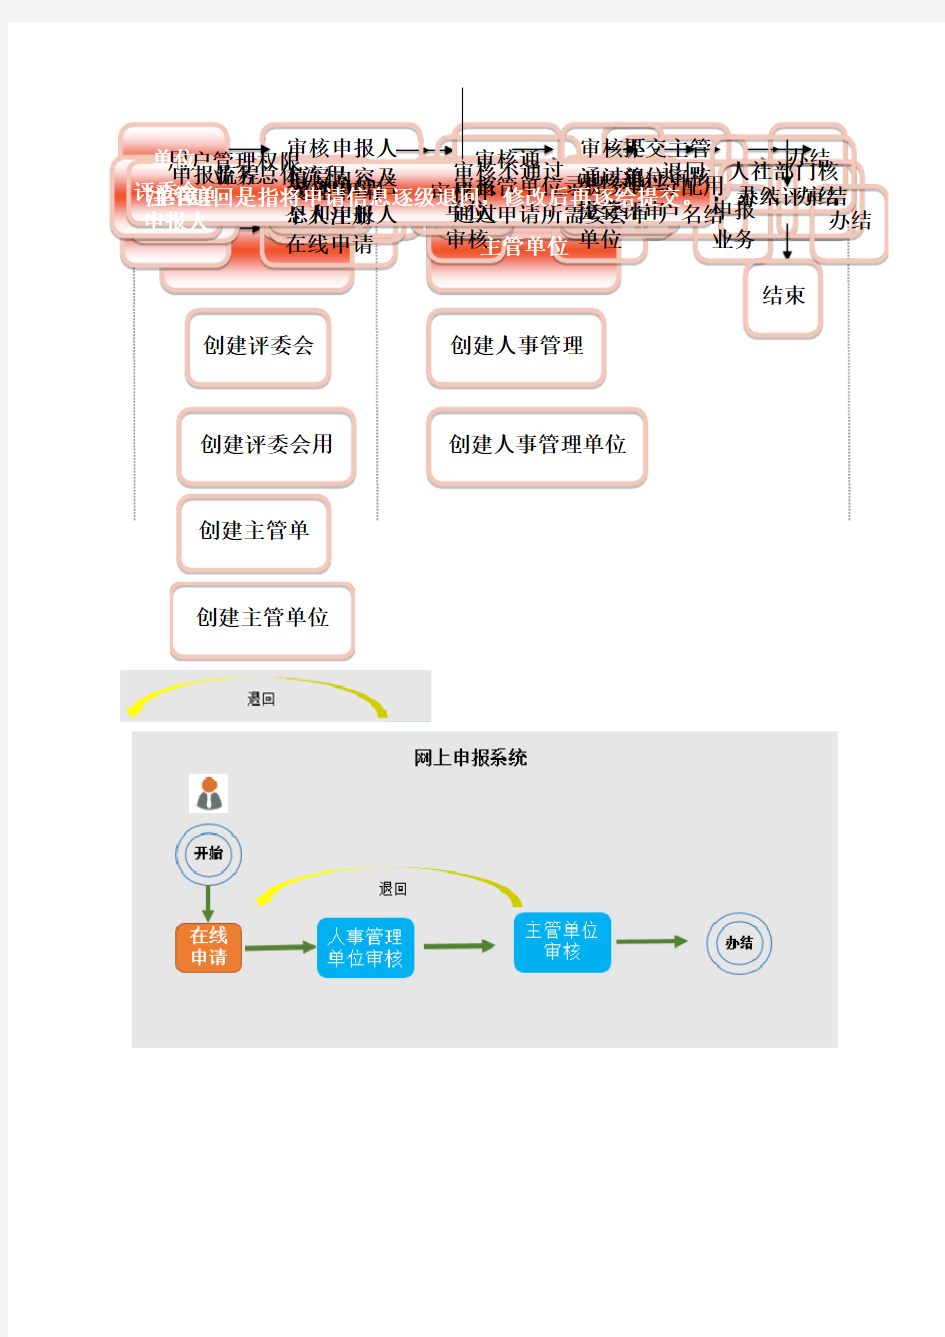 广东省专业技术人才信息管理系统操作流程